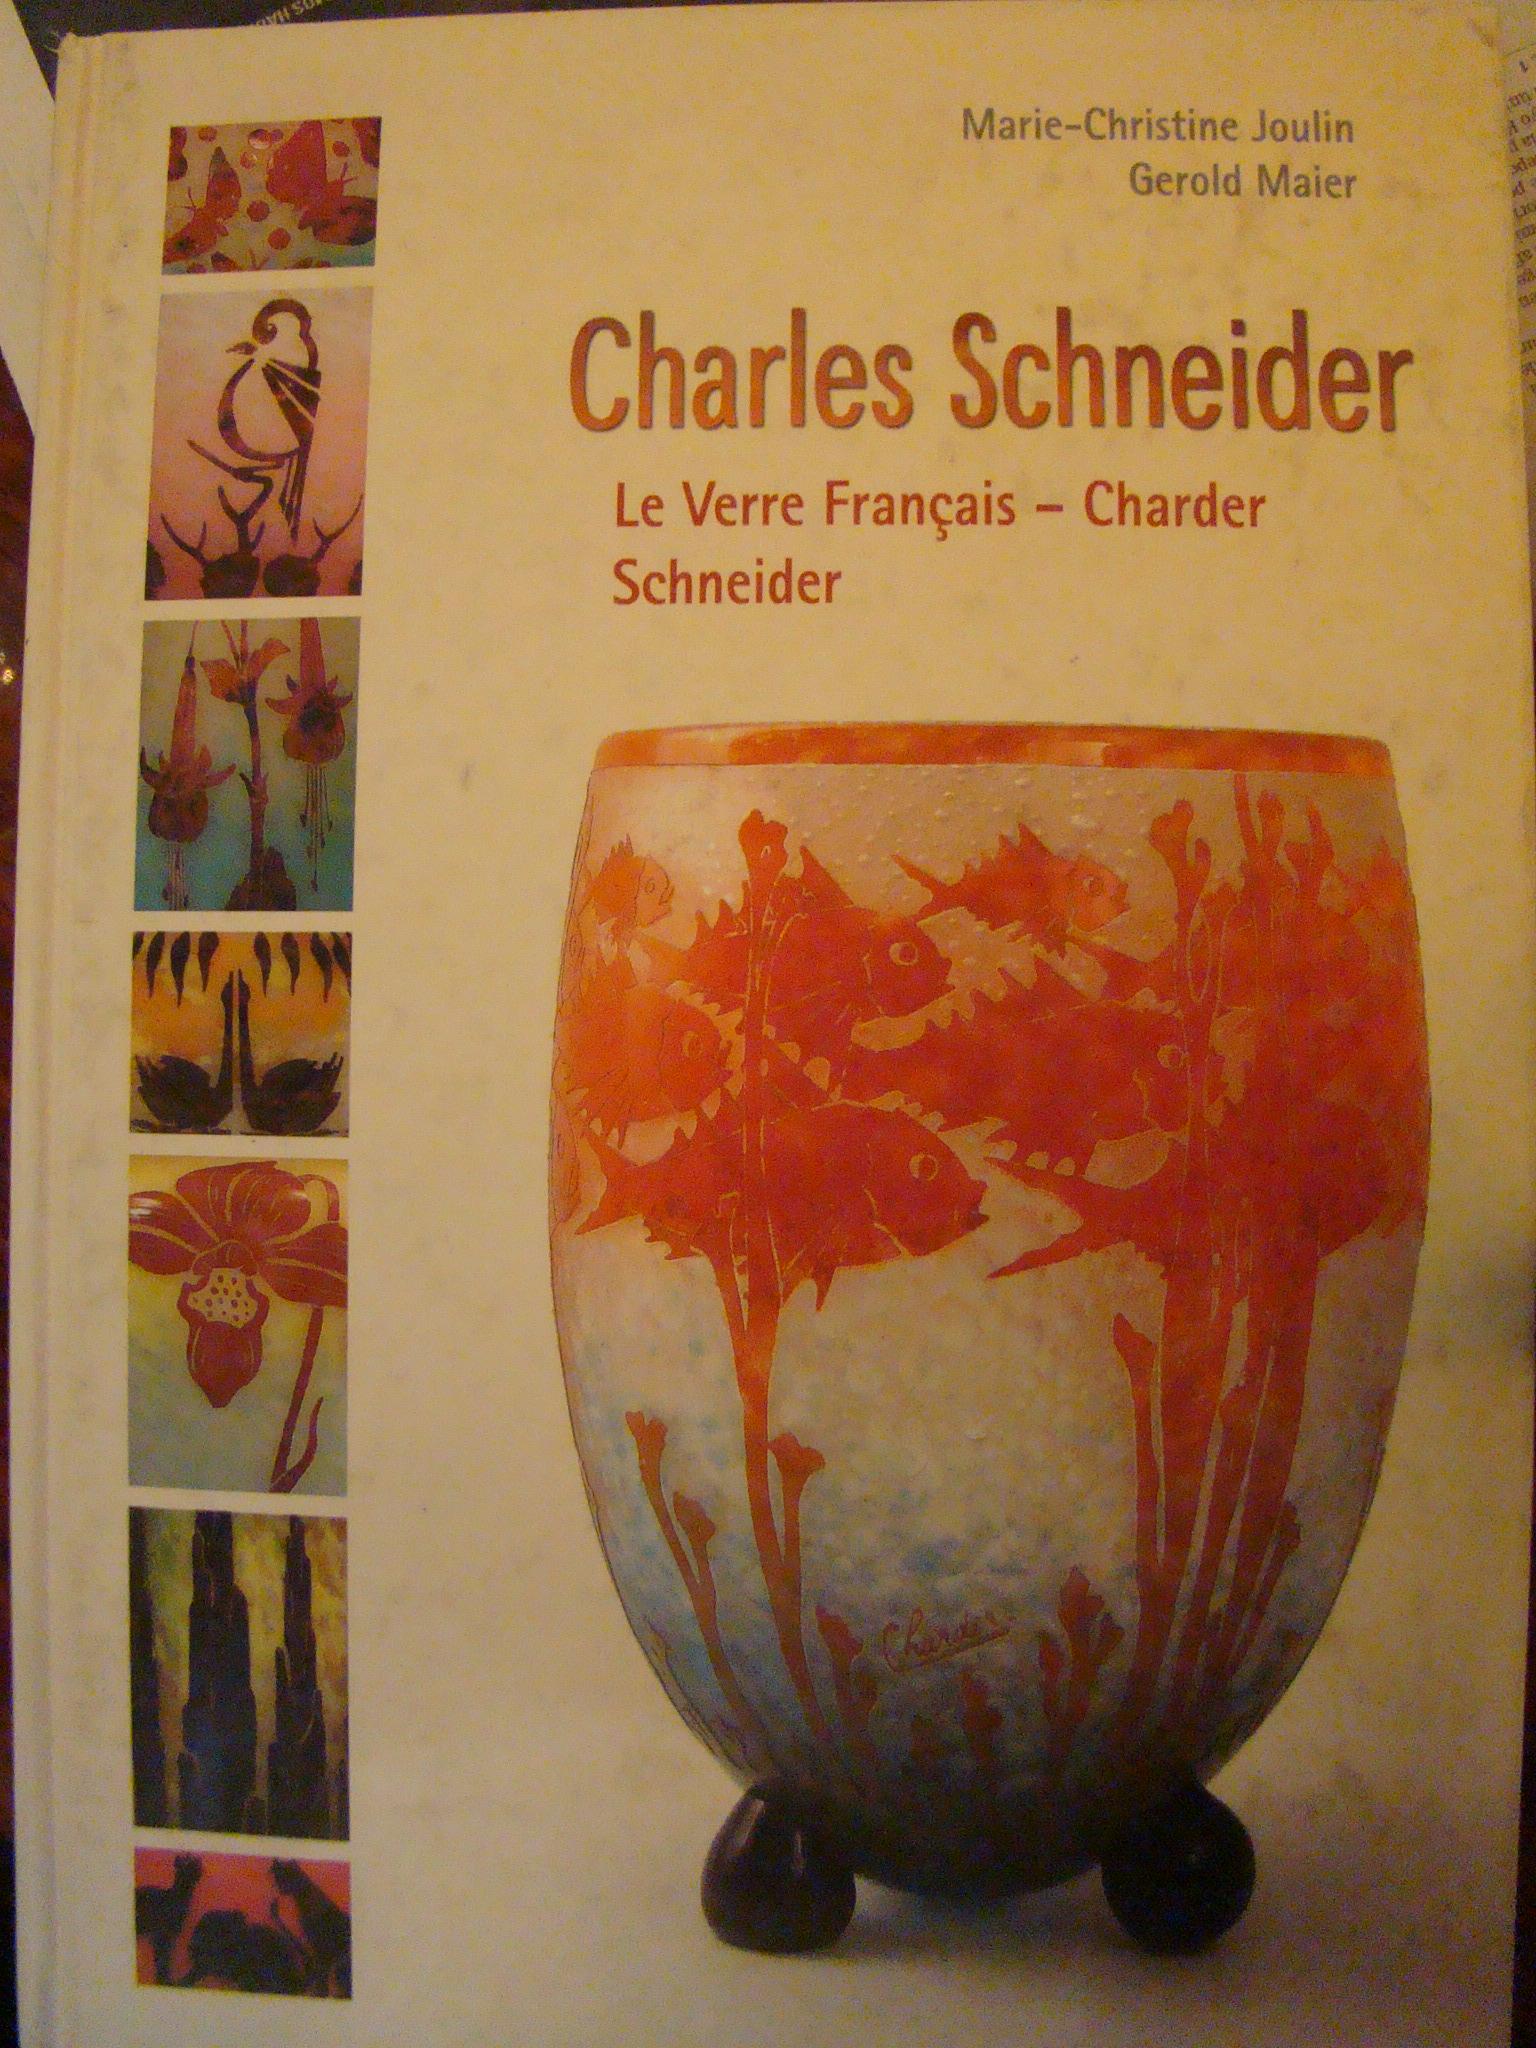 Signe : Charder
Charder est un nom composé de la première partie de Charles et de la deuxième partie de Schnieder. Il a parfois été apposé sur des verres conçus par Charles Schneider, notamment sur des pièces de la ligne Le Verre Français.
Le Verre